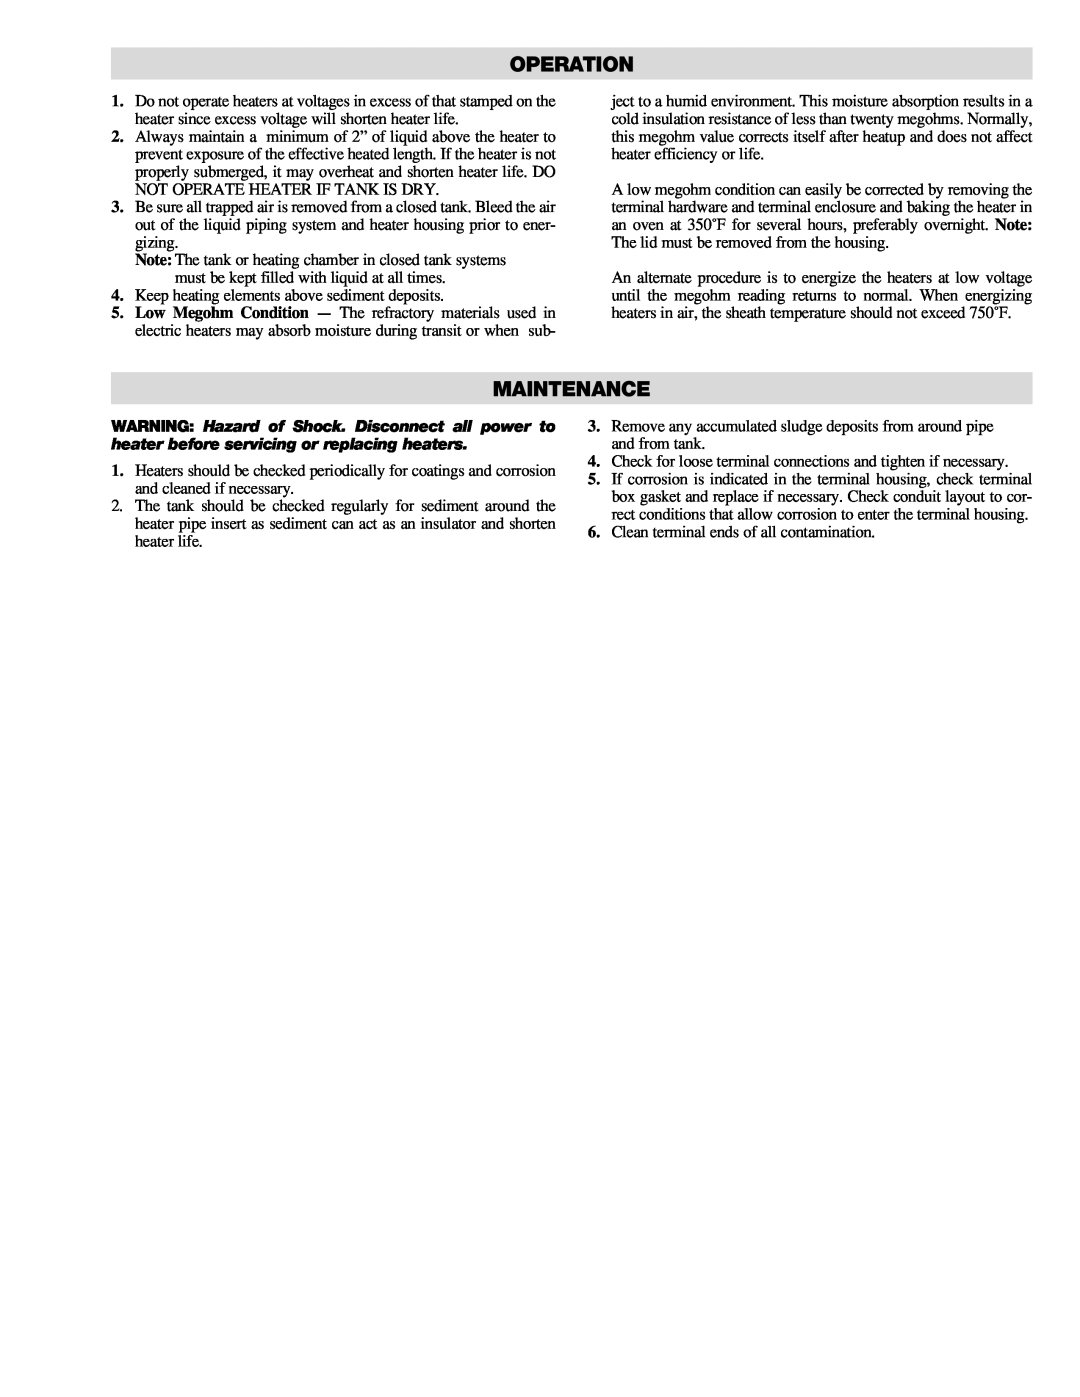 Chromalox PD441-1 manual Operation, Maintenance 